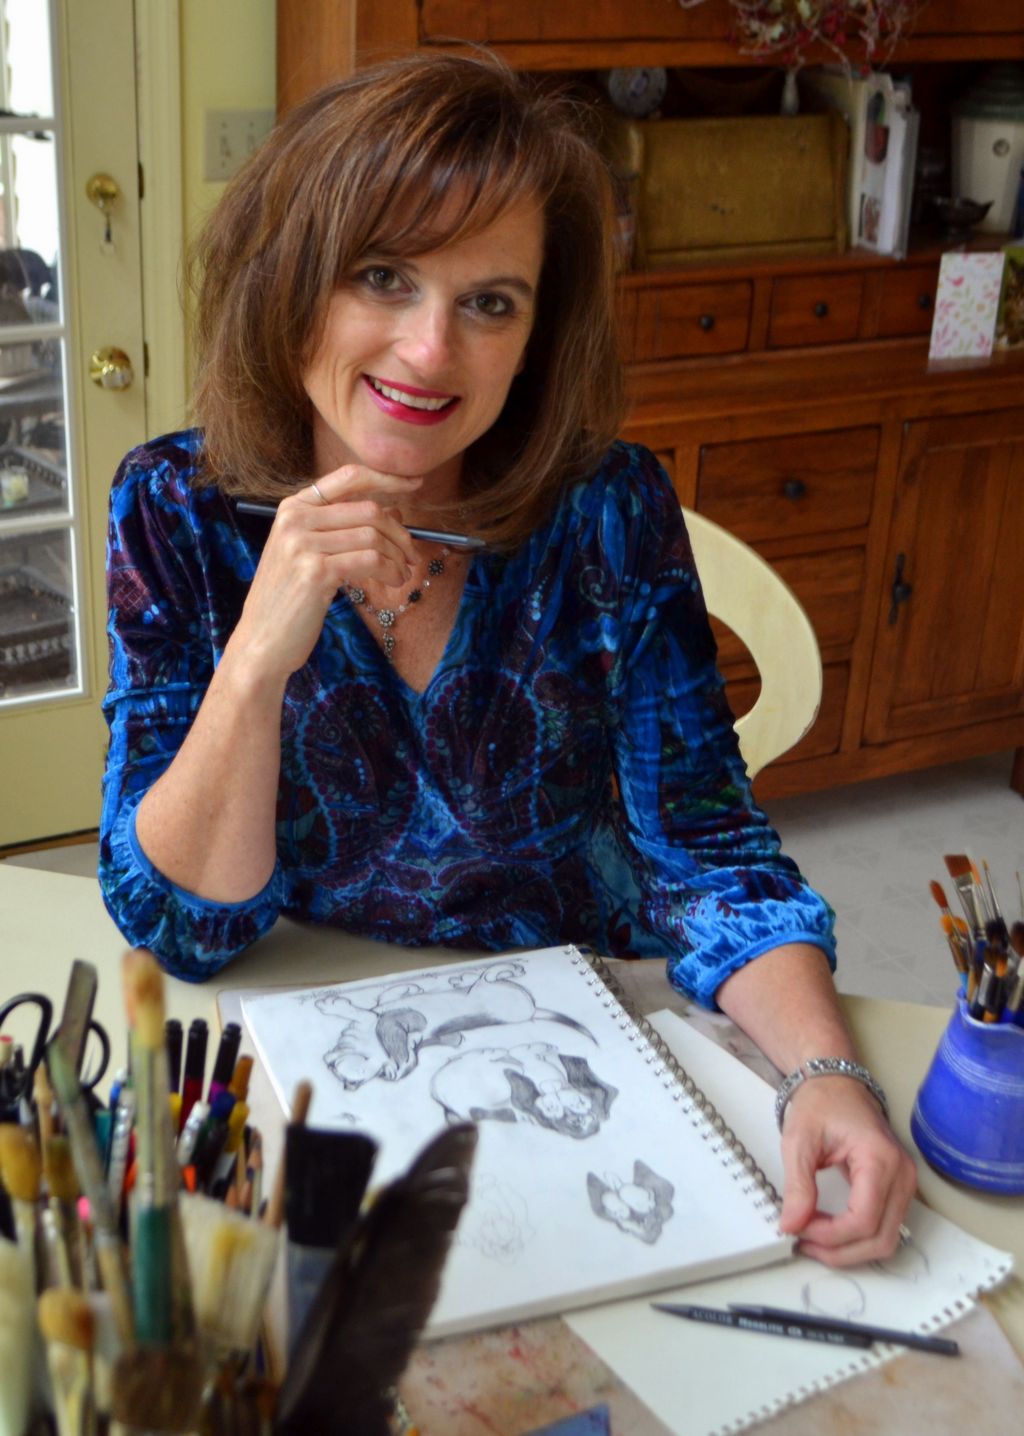 Cheryl Kugler, Artist and Illustrator